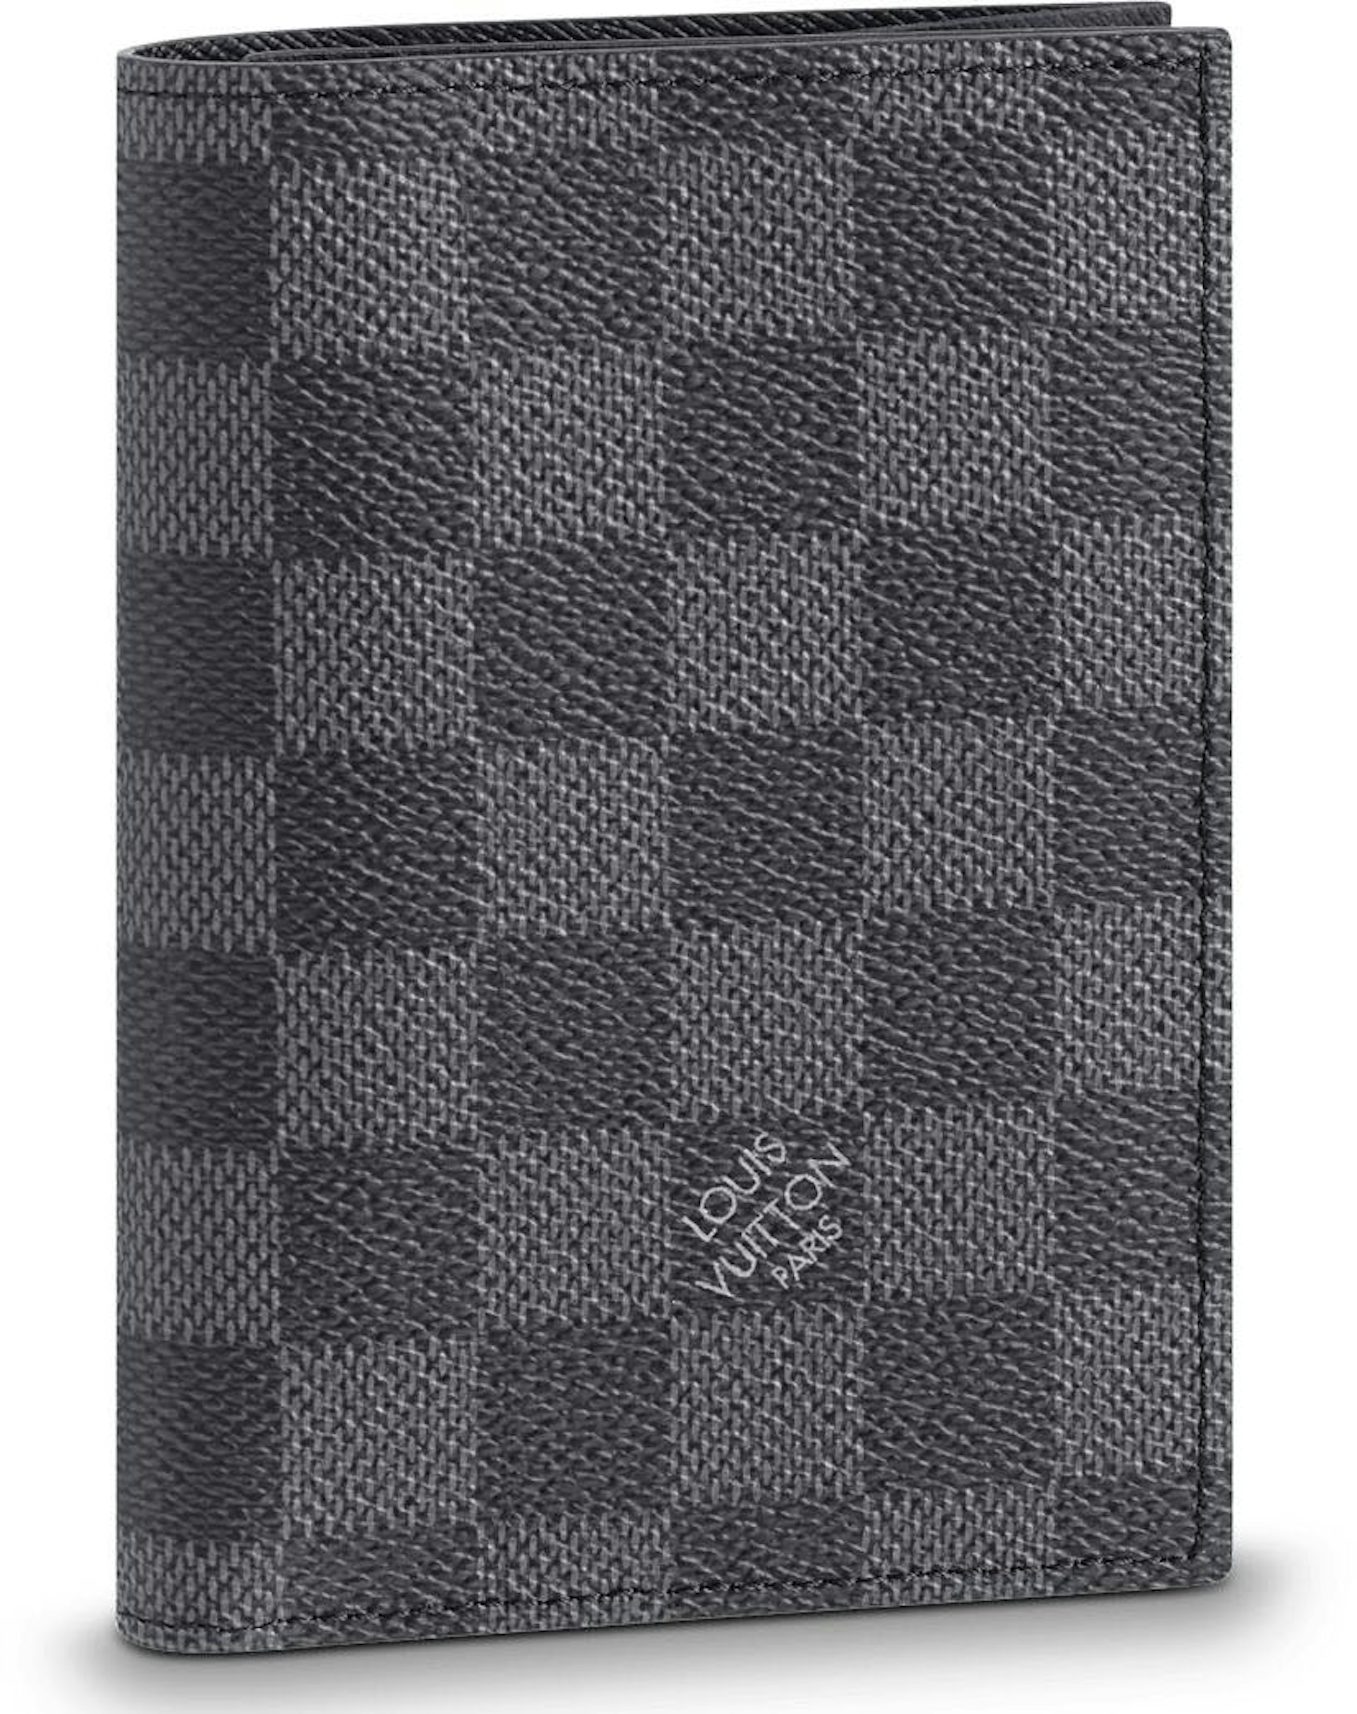 Authentic Louis Vuitton Damier Graphite Canvas Passport Cover Holder